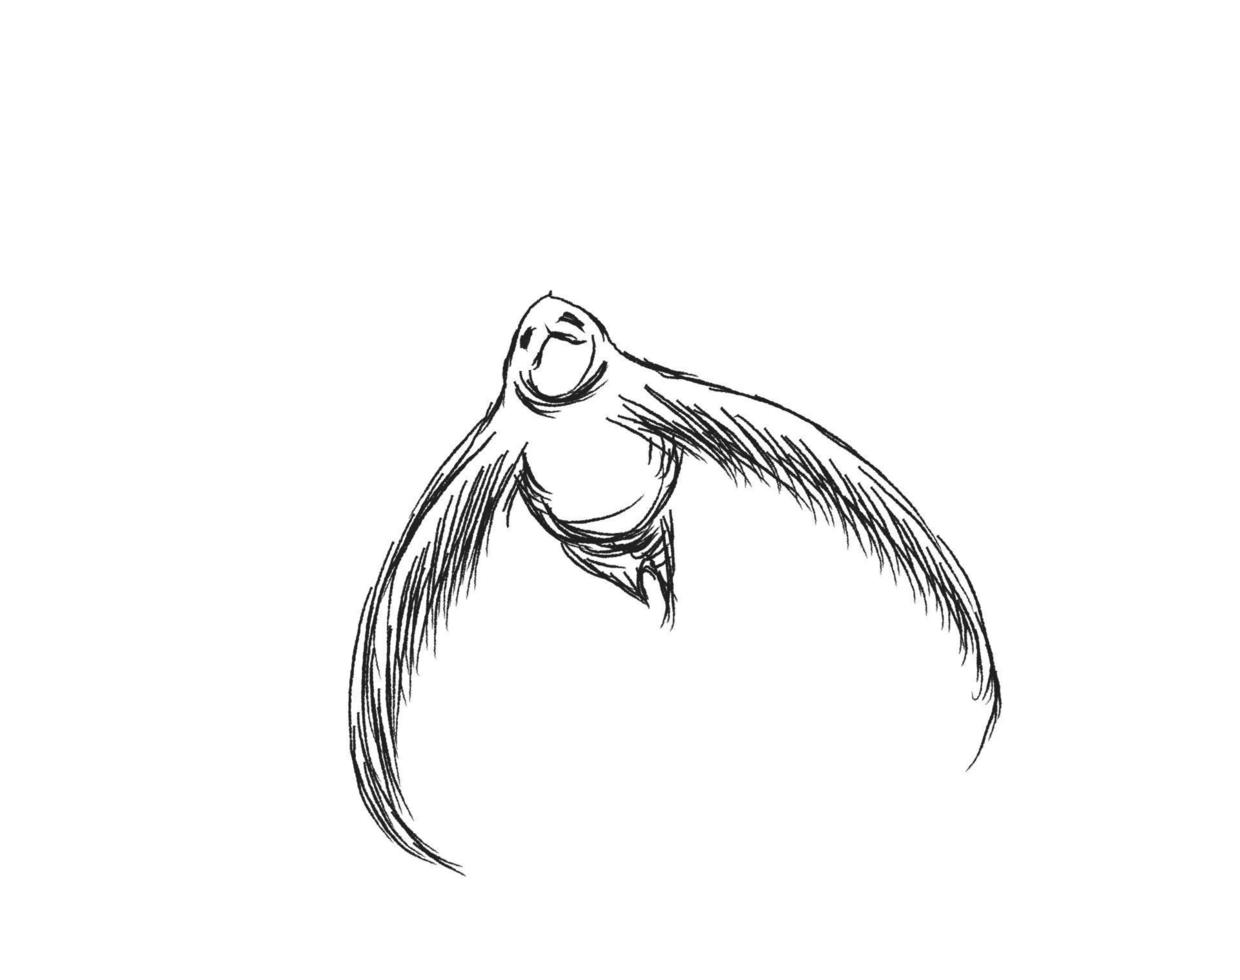 fond d'oiseaux volants. illustration vectorielle de dessin au crayon. vecteur